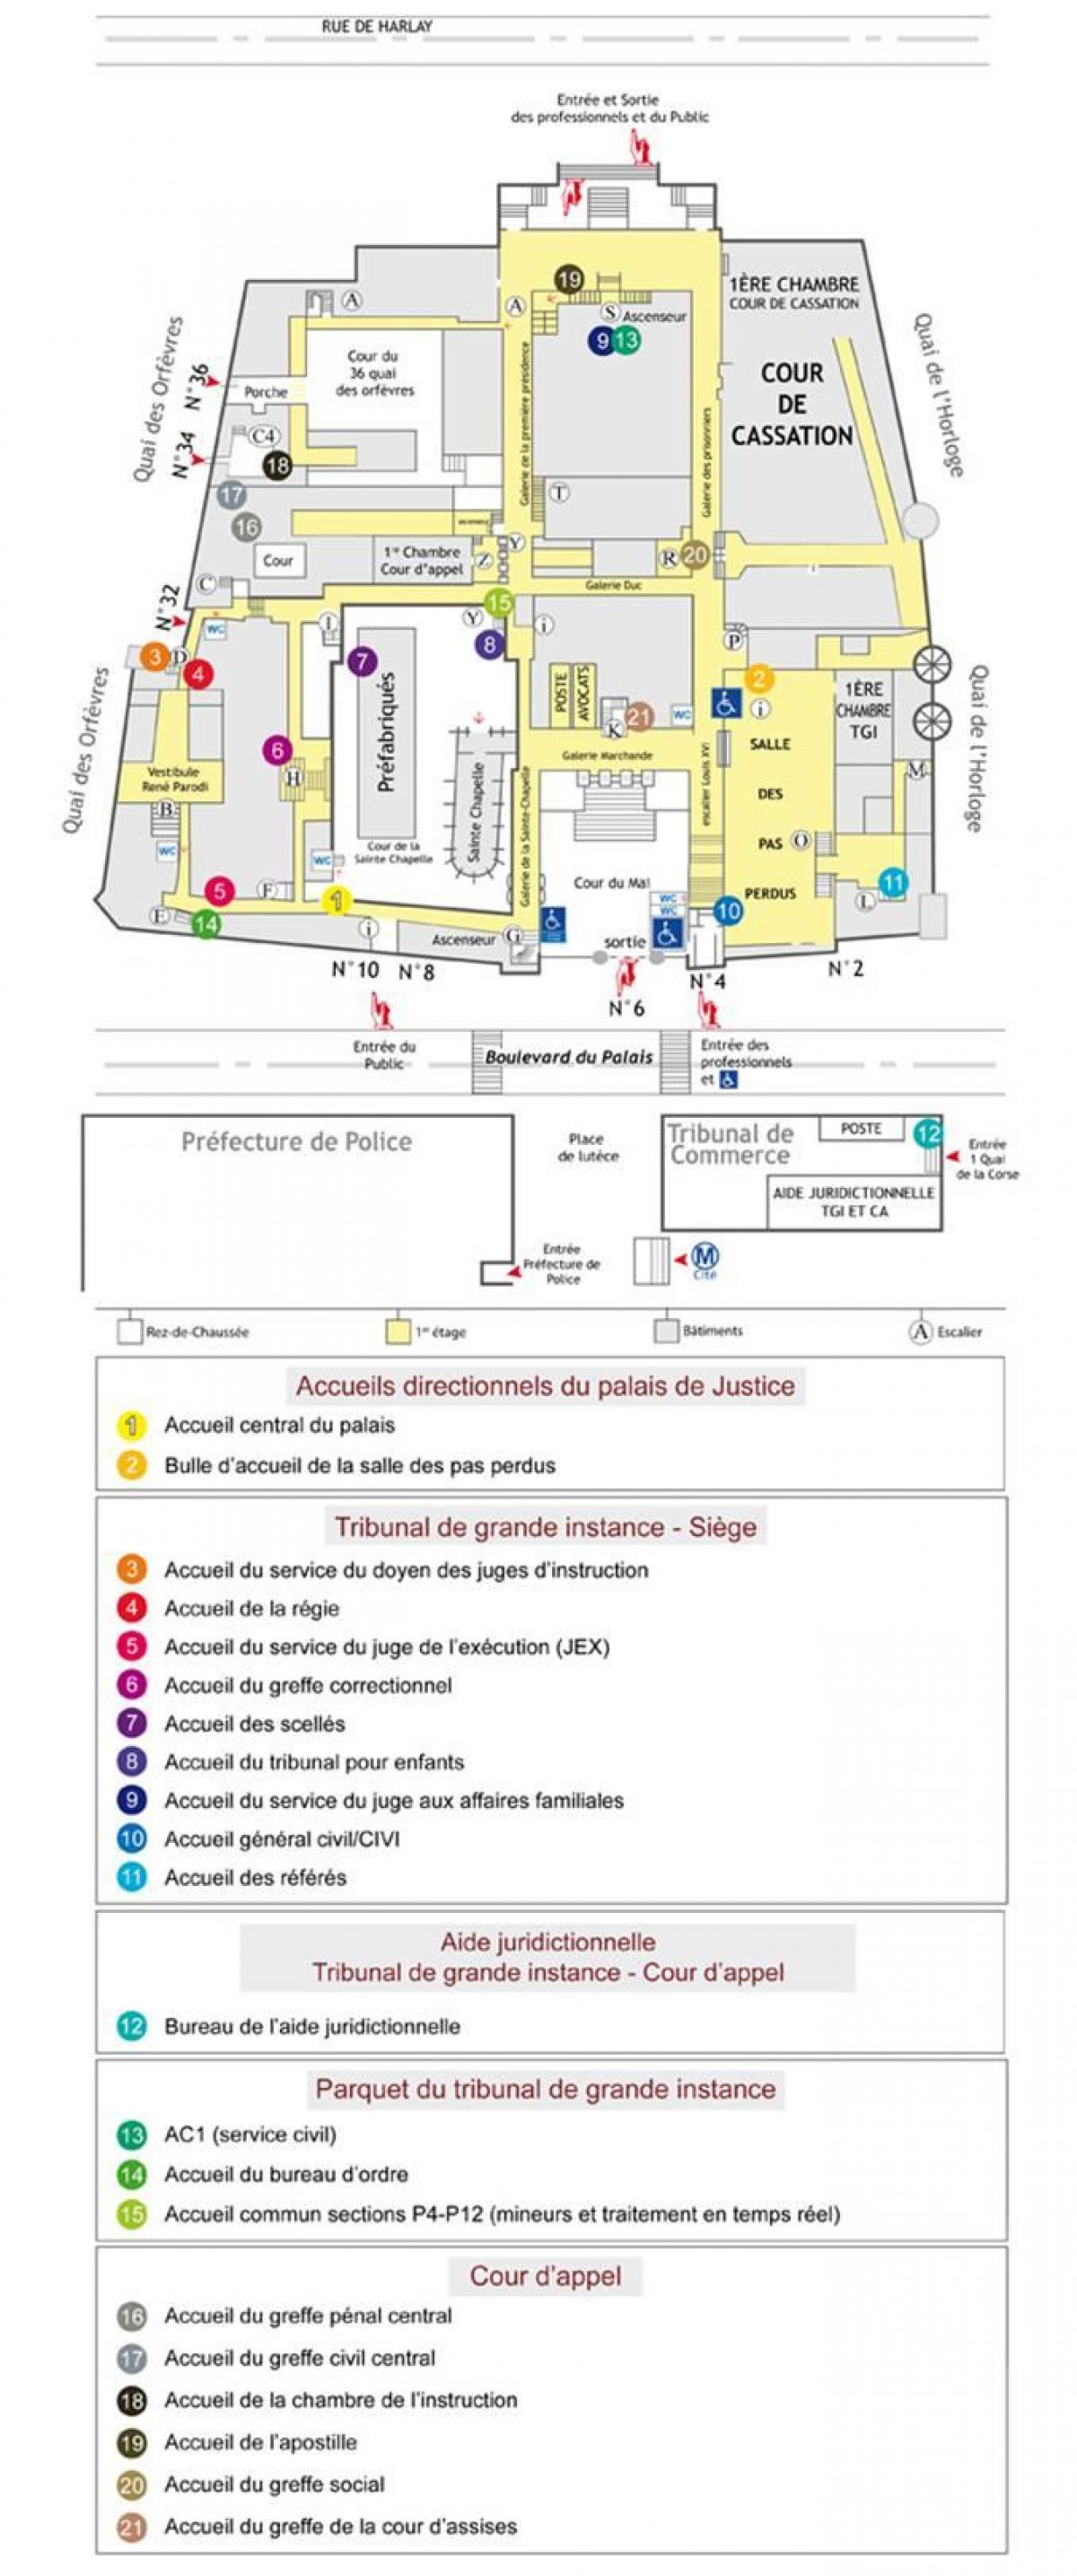 Mapa Palais de Justice Paris